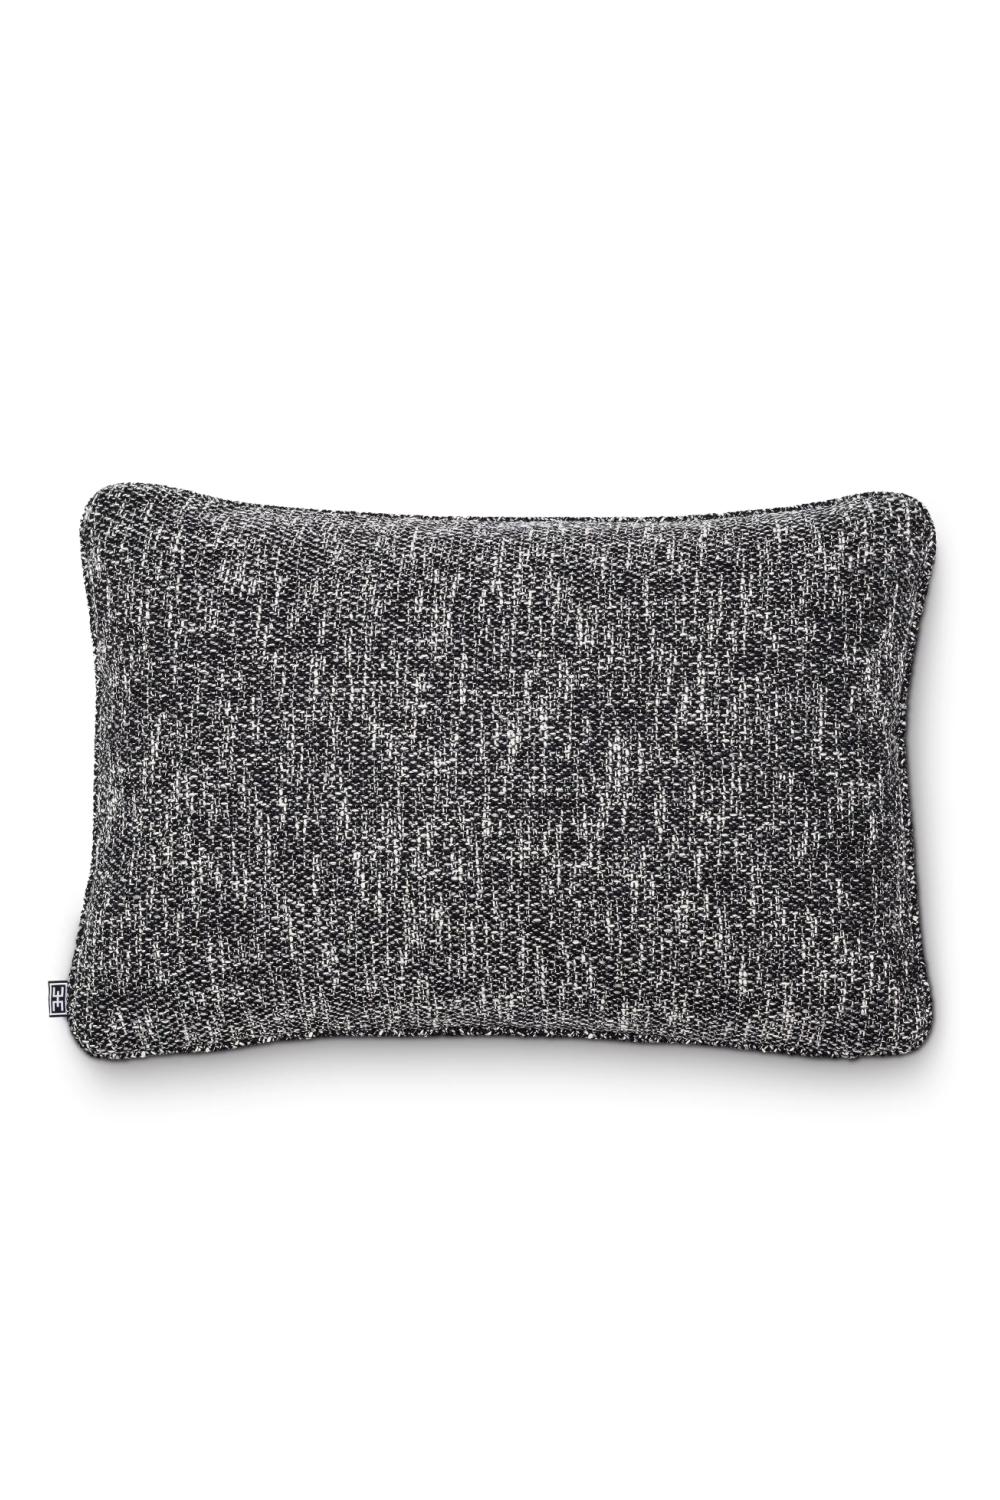 Black Contemporary Lumbar Pillow | Eichholtz Cambon | Oroa.com